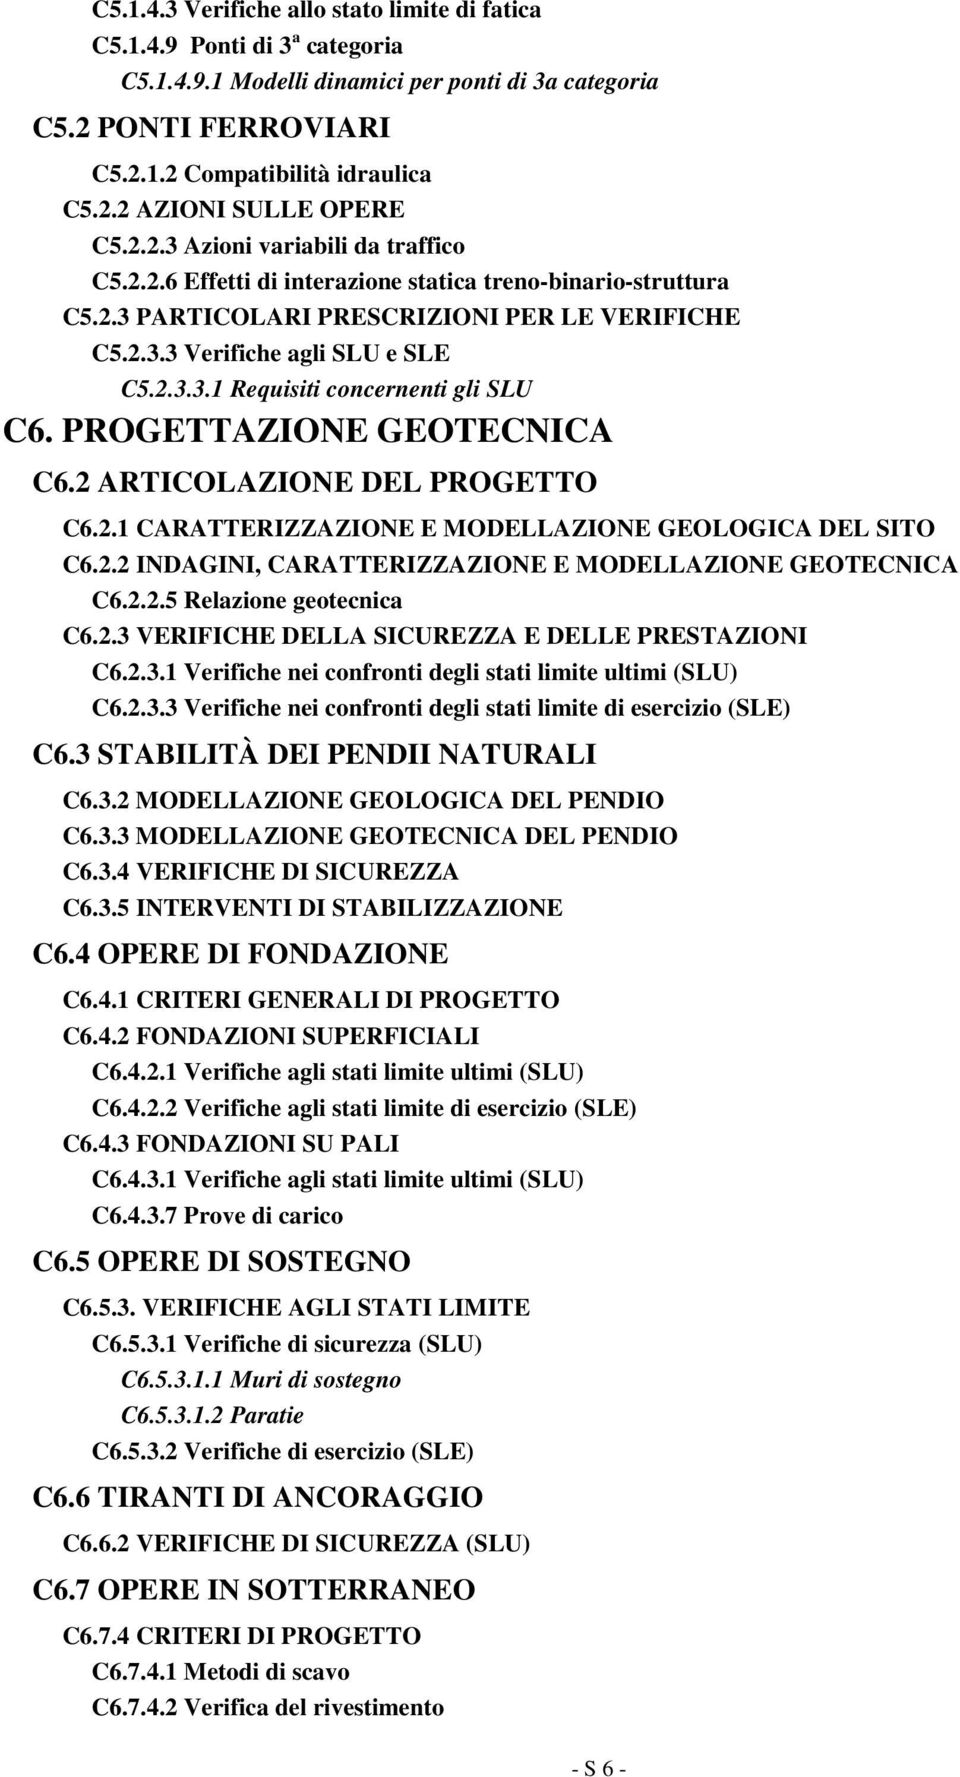 PROGETTAZIONE GEOTECNICA C6.2 ARTICOLAZIONE DEL PROGETTO C6.2.1 CARATTERIZZAZIONE E MODELLAZIONE GEOLOGICA DEL SITO C6.2.2 INDAGINI, CARATTERIZZAZIONE E MODELLAZIONE GEOTECNICA C6.2.2.5 Relazione geotecnica C6.